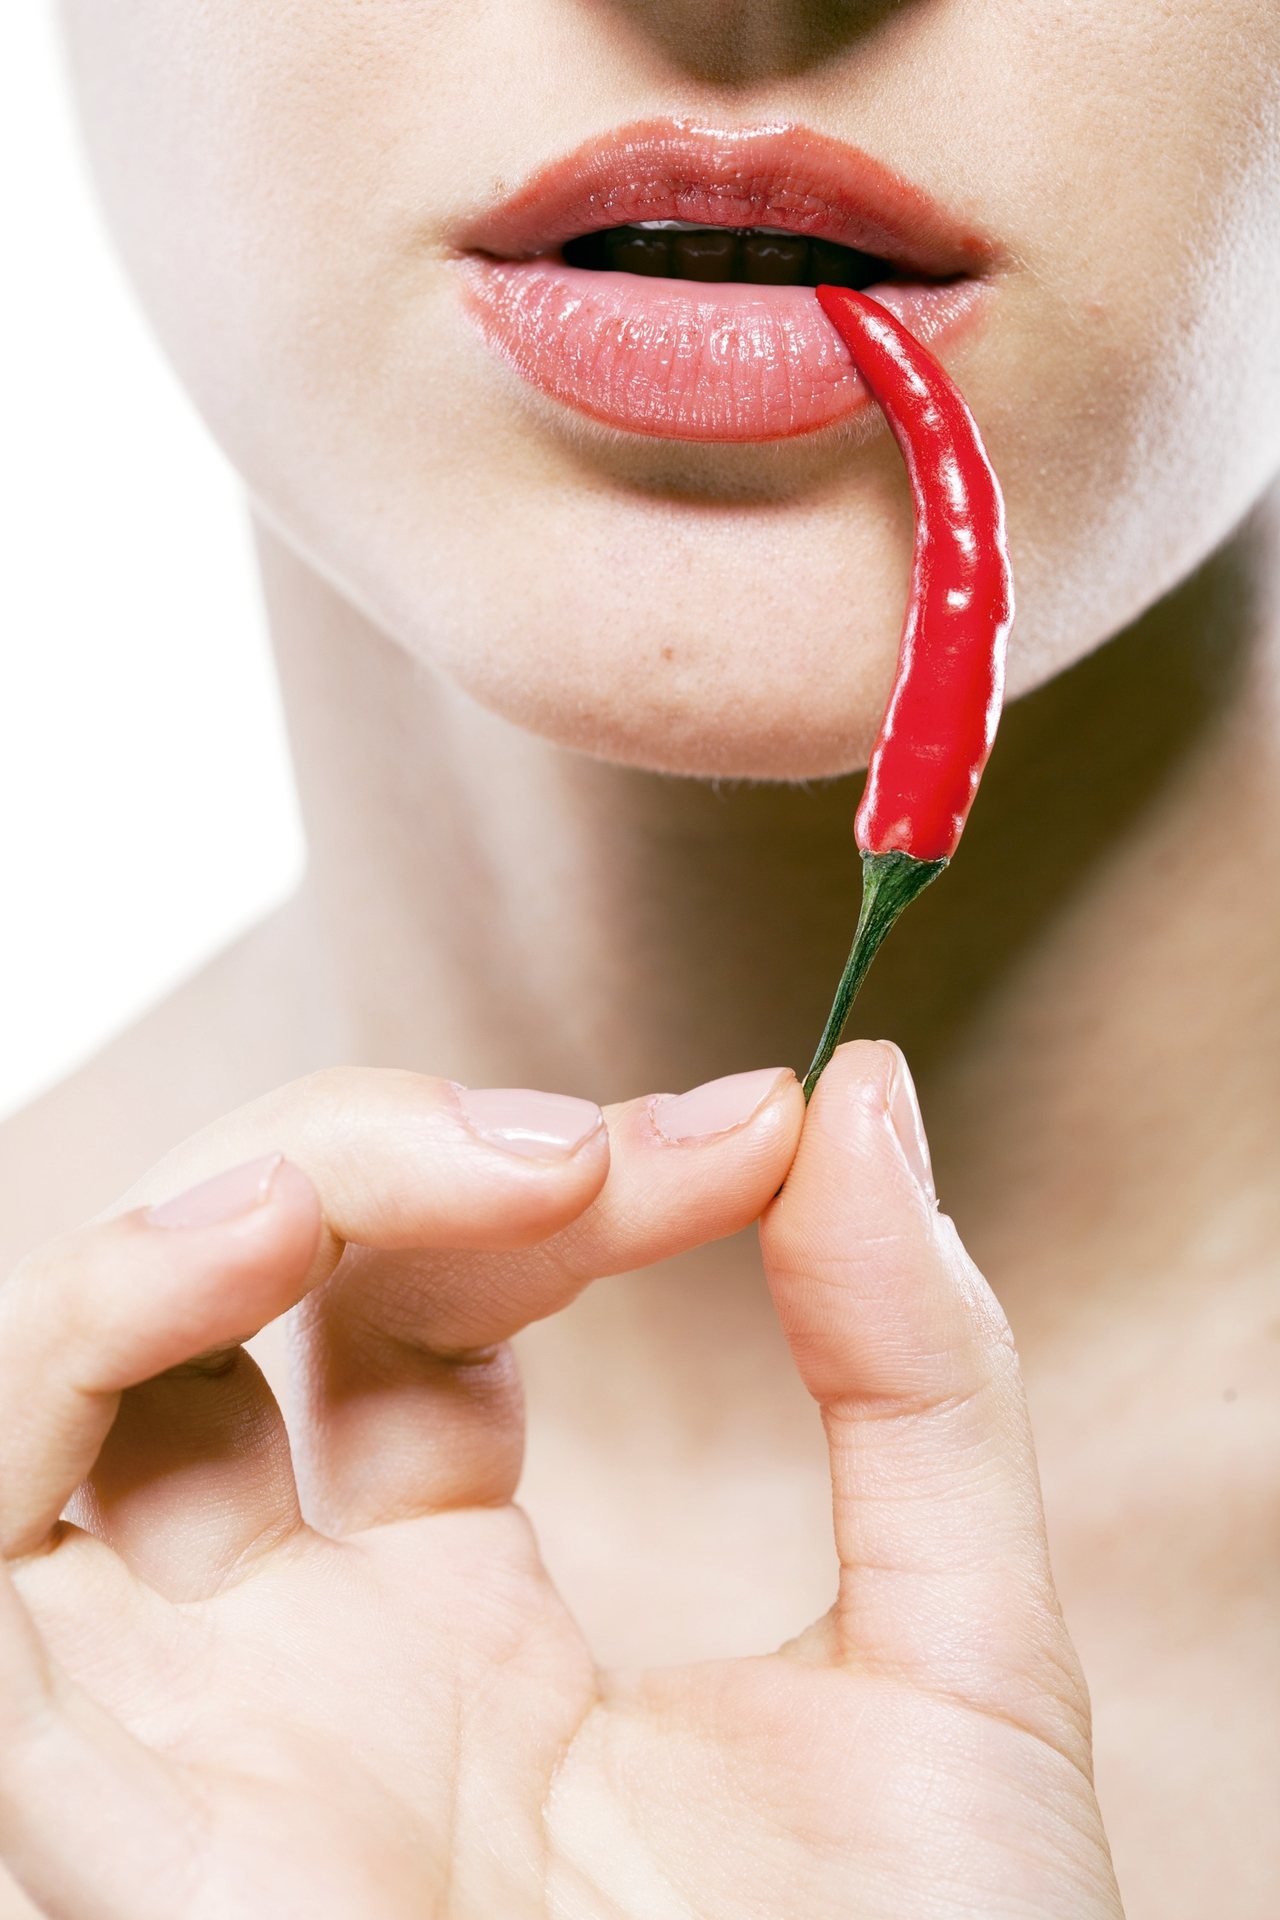 就像辣椒在舌頭上的辛辣感，辣椒也能幫忙增加性生活中的情趣。<br />圖／元氣周報